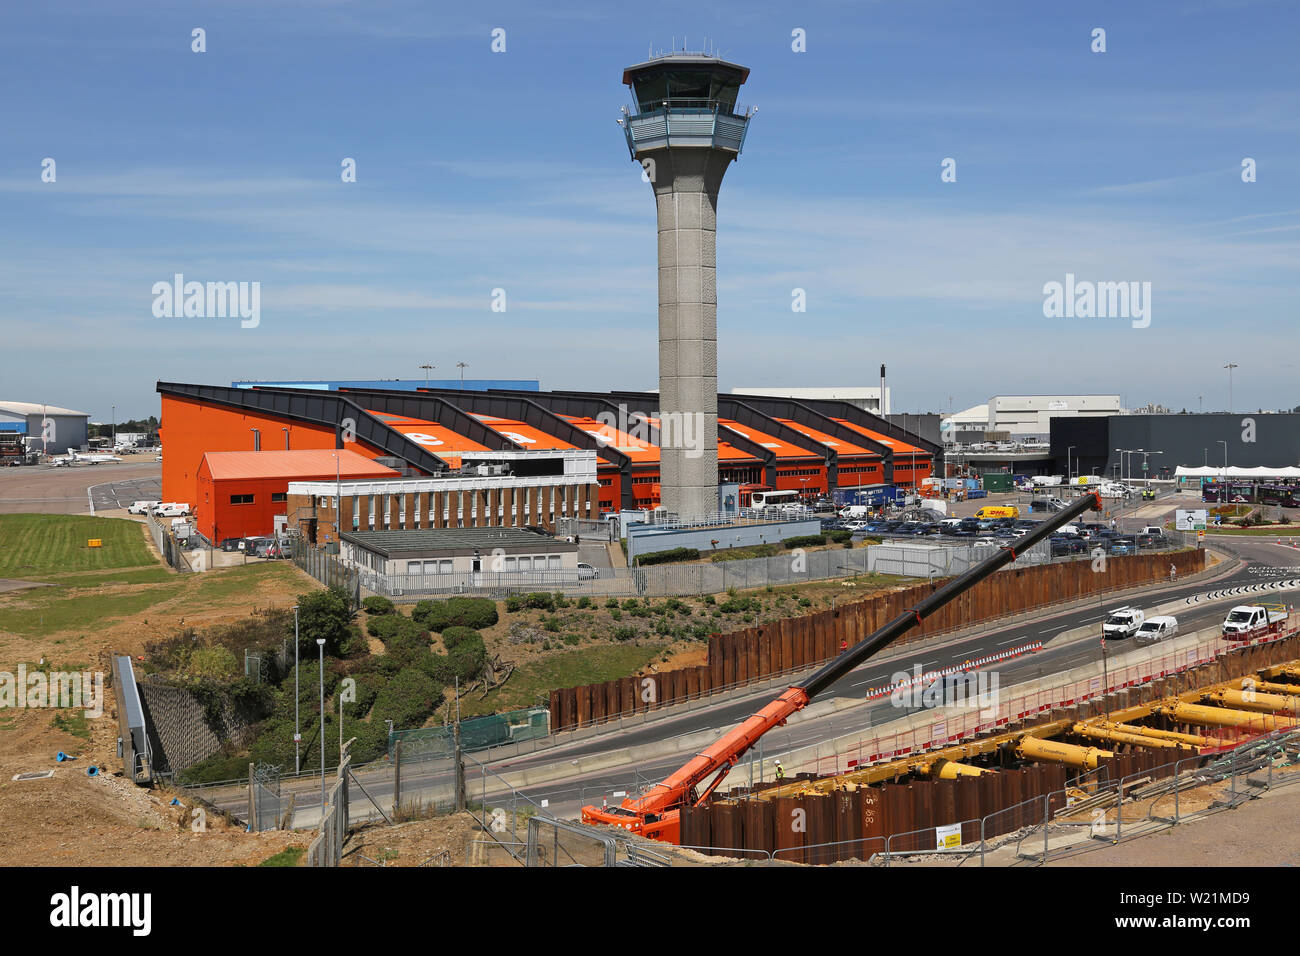 London Luton Airport, zentralen Bereich mit Easyjet Head Office, tower Baugrube für den neuen DART-Bahn Link - fällig in 2021 zu öffnen. Stockfoto